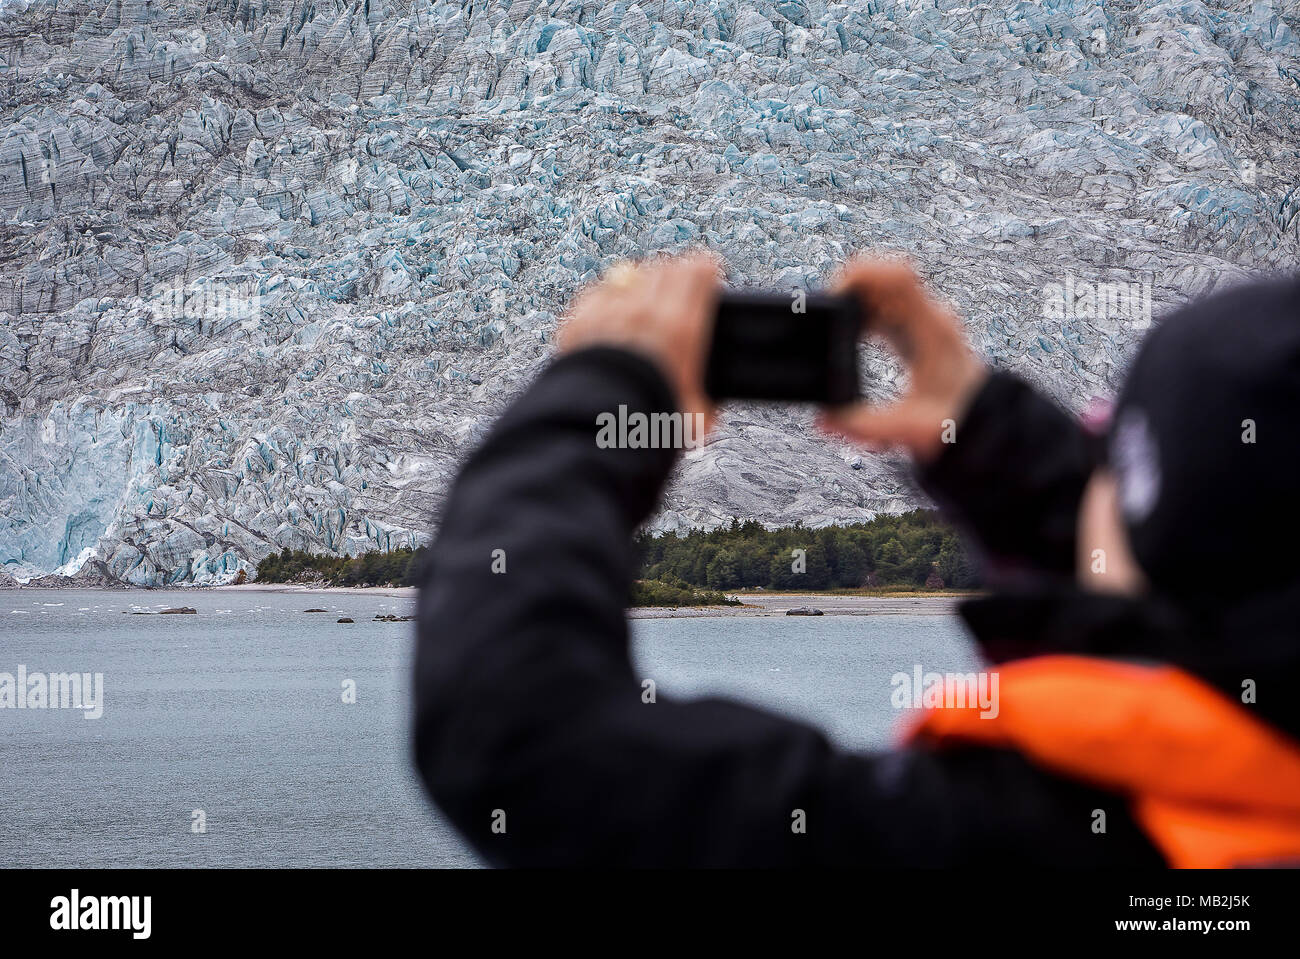 La prise de photo, tourisme Glacier Pia, à partir de navires de croisière Ventus, Pia bay, dans le canal de Beagle (nord-ouest), PN Alberto de Agostini, Tierra del Fueg Banque D'Images